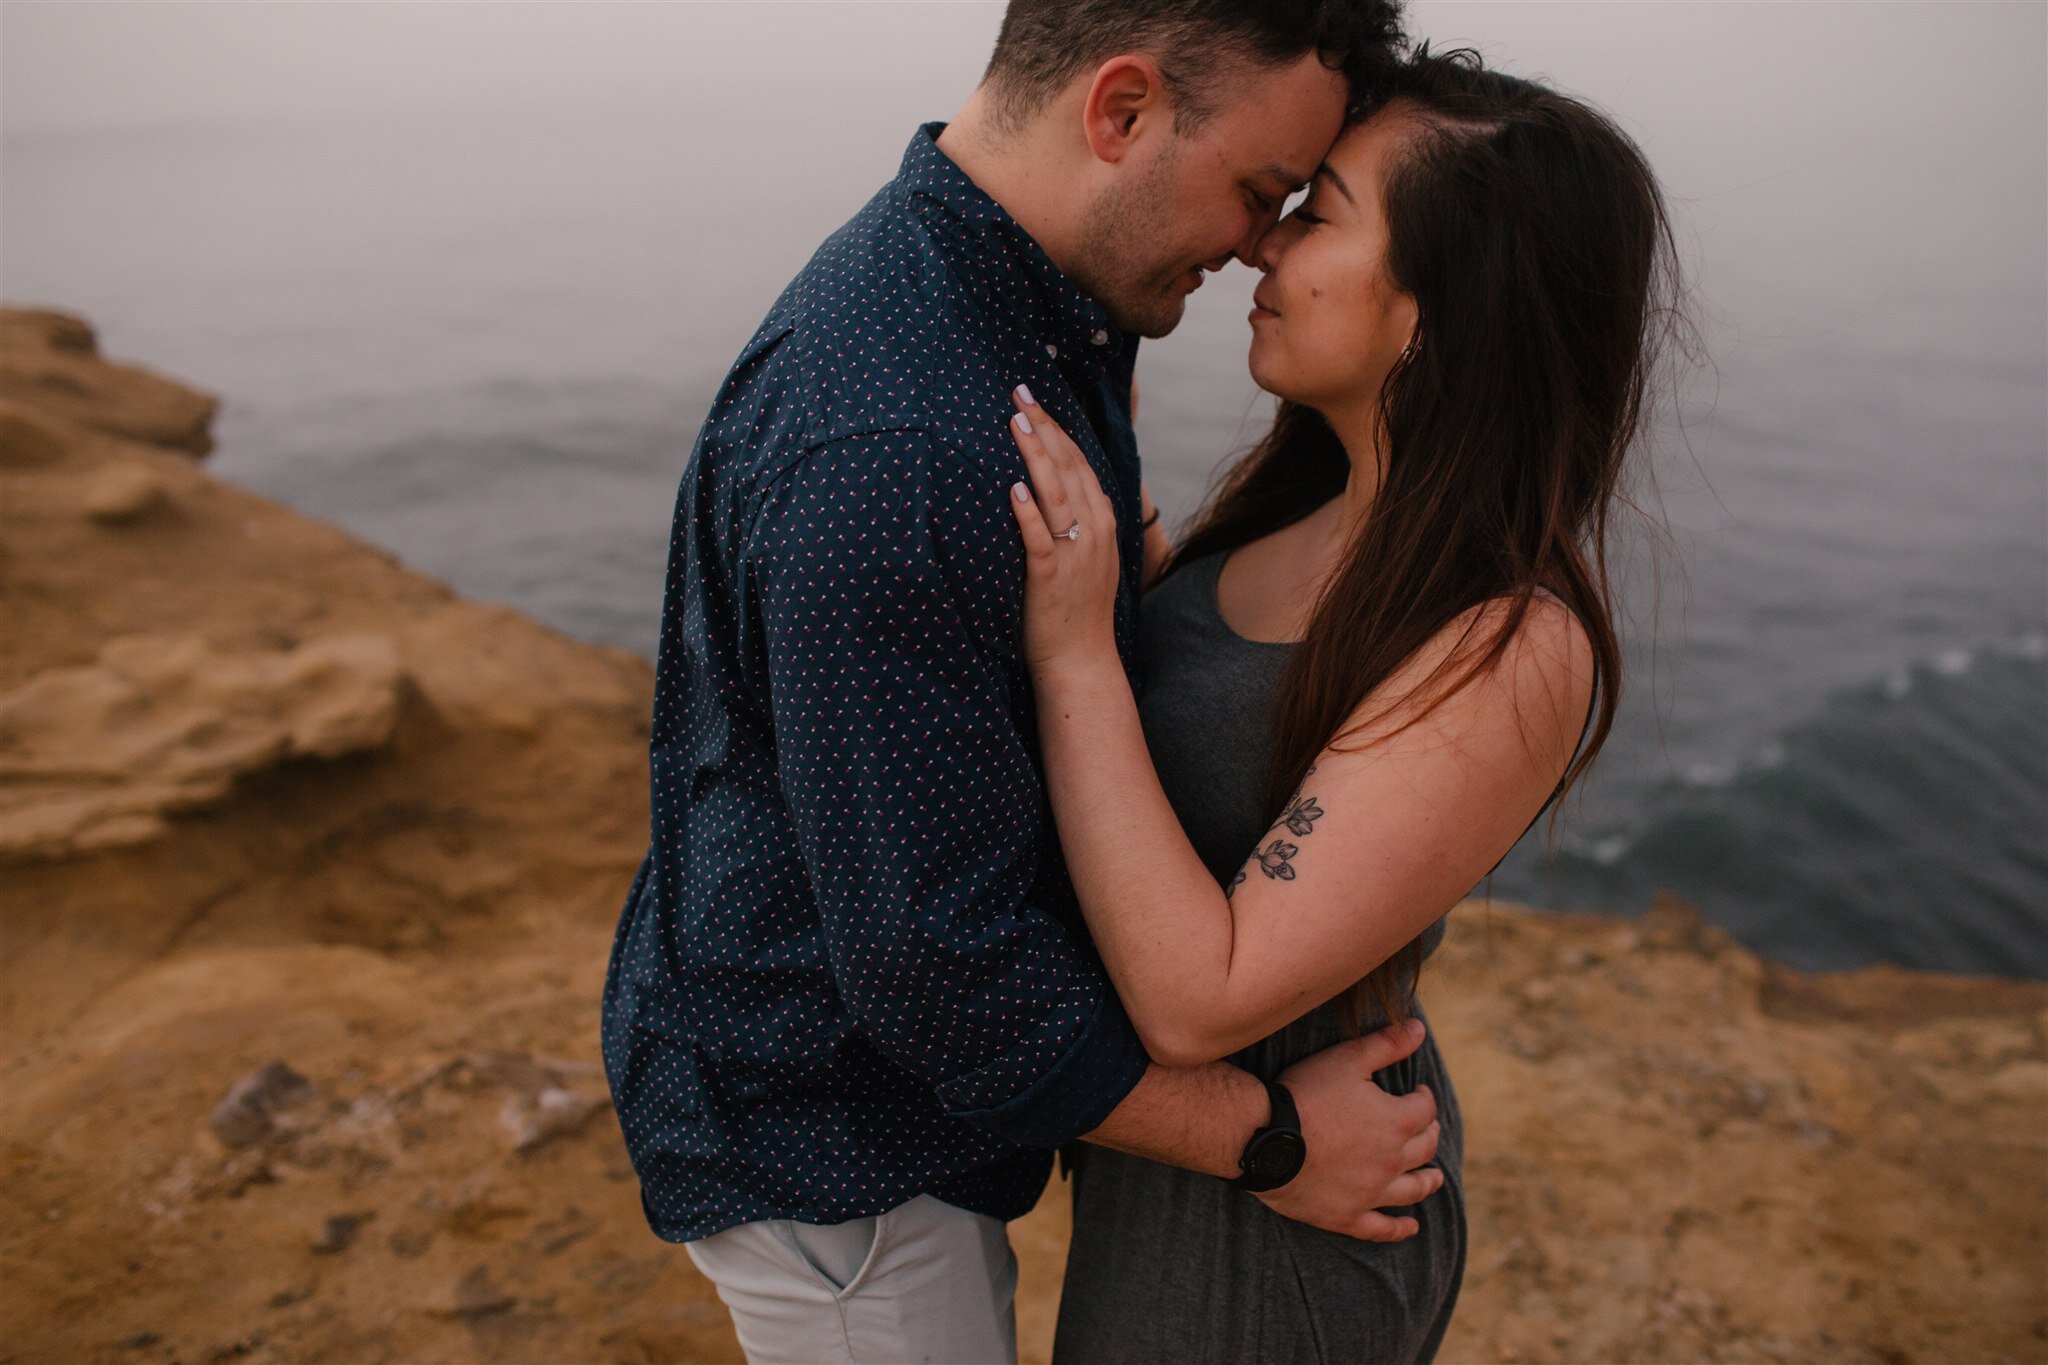 sunset-cliffs-san-diego-surprise-proposal-engagement-socal-southern-california-wedding-elopement-photographer-beach-ocean-13.jpg